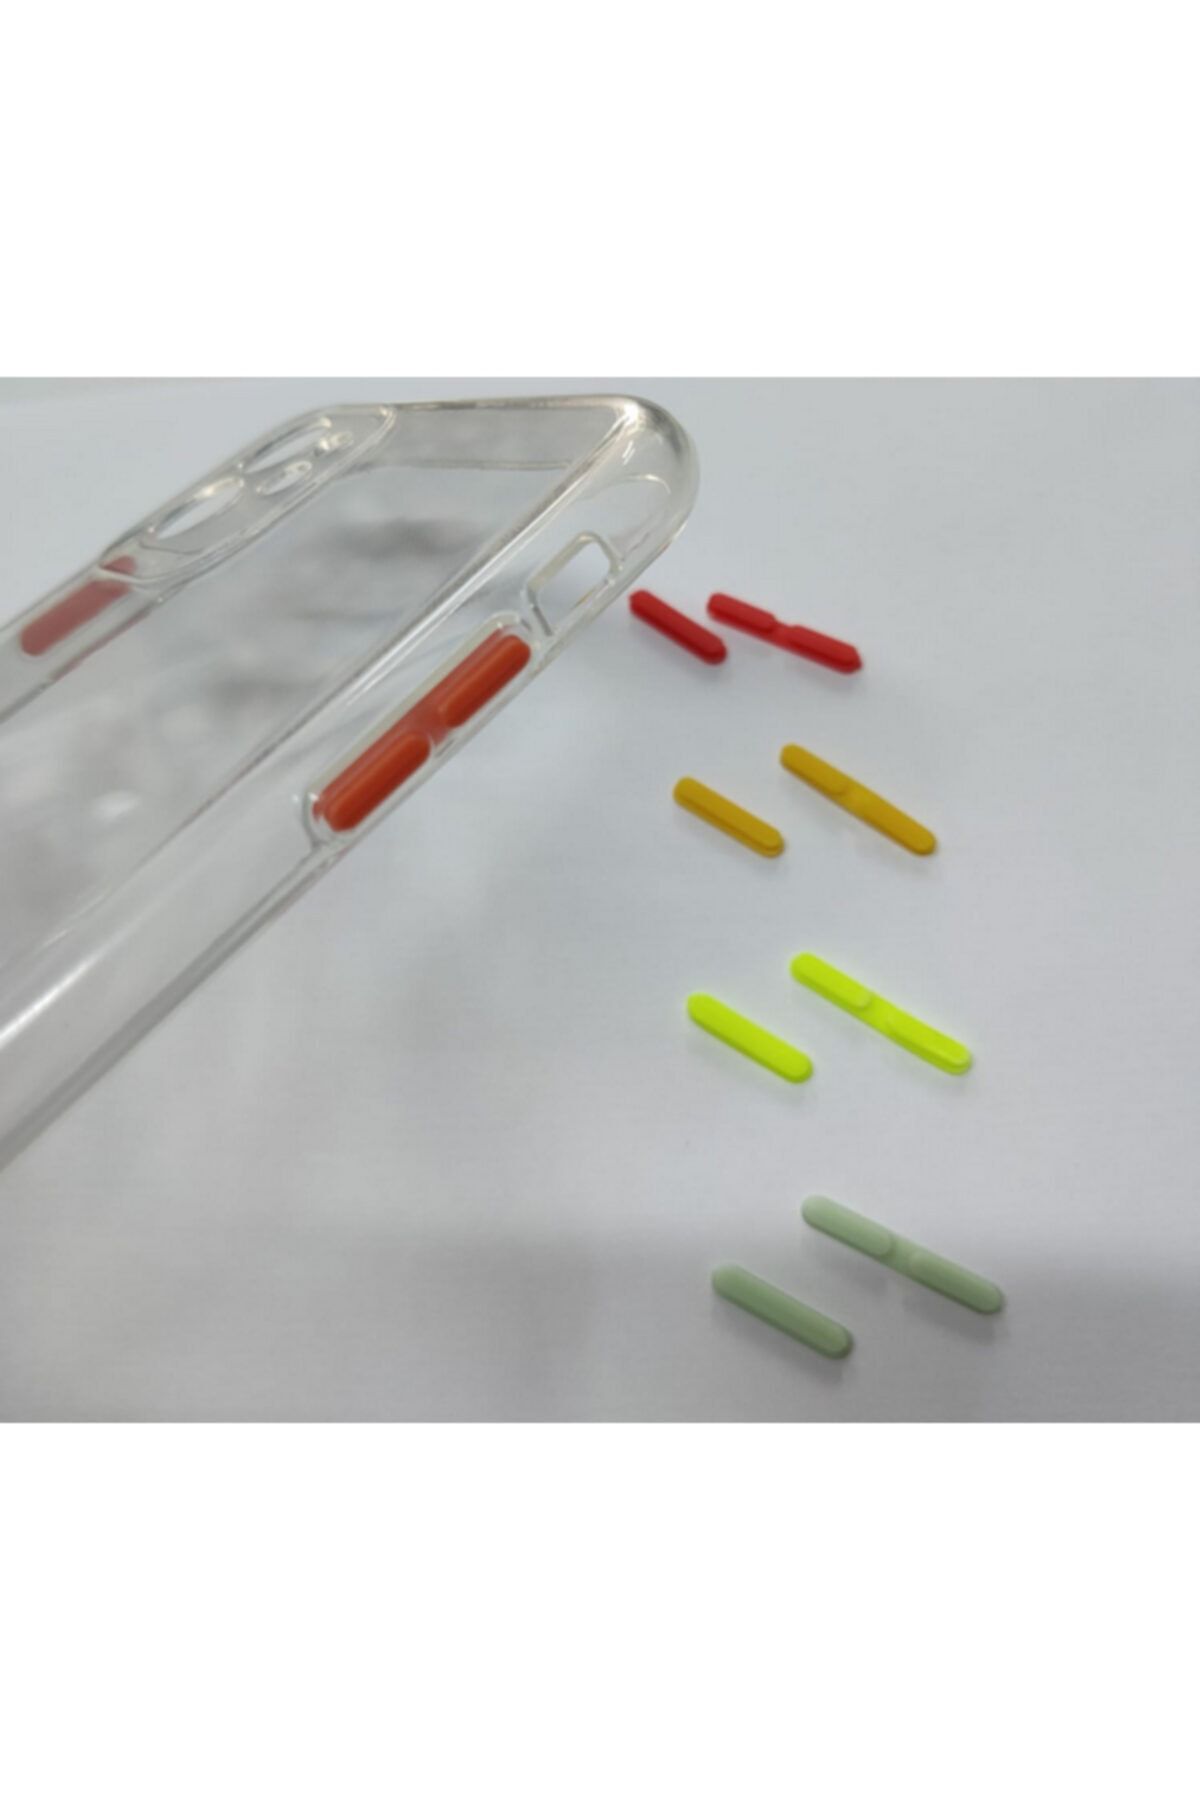 Dijimedia Iphone 11 Uyumlu Şeffaf Silikon Kılıf - Tuş Takımları Renkli Ve Değiştirilebilir.